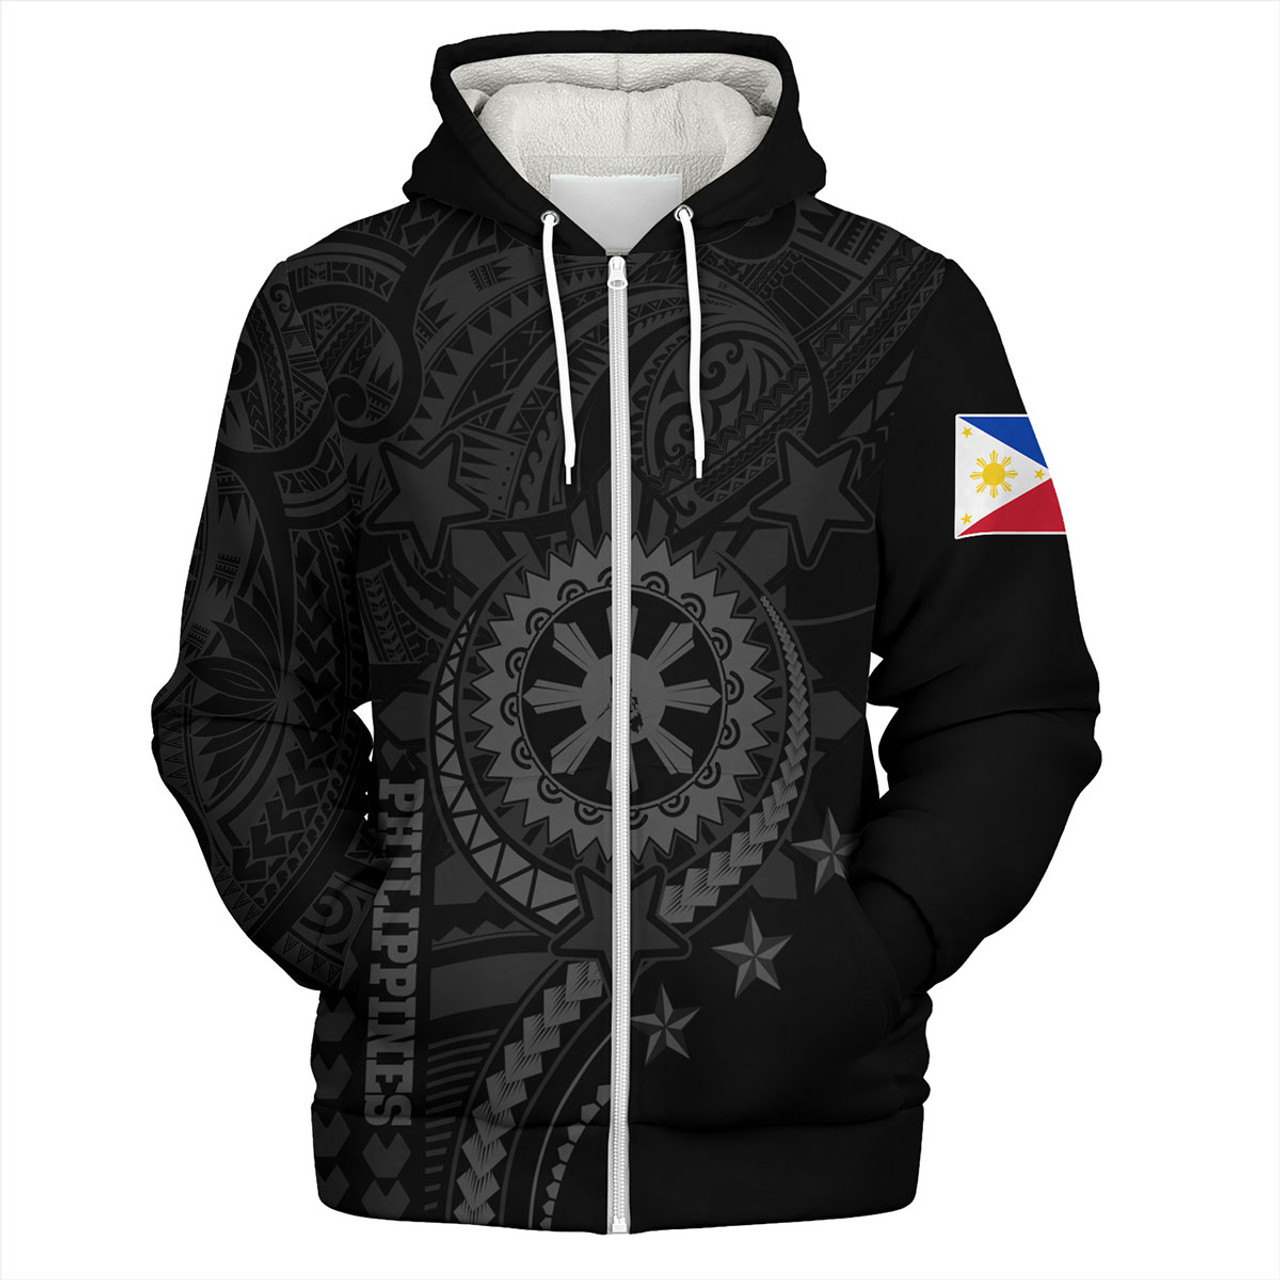 Philippines Filipinos Sherpa Hoodie - Proud To Be Filipino Tribal Sun Batok Grey Style